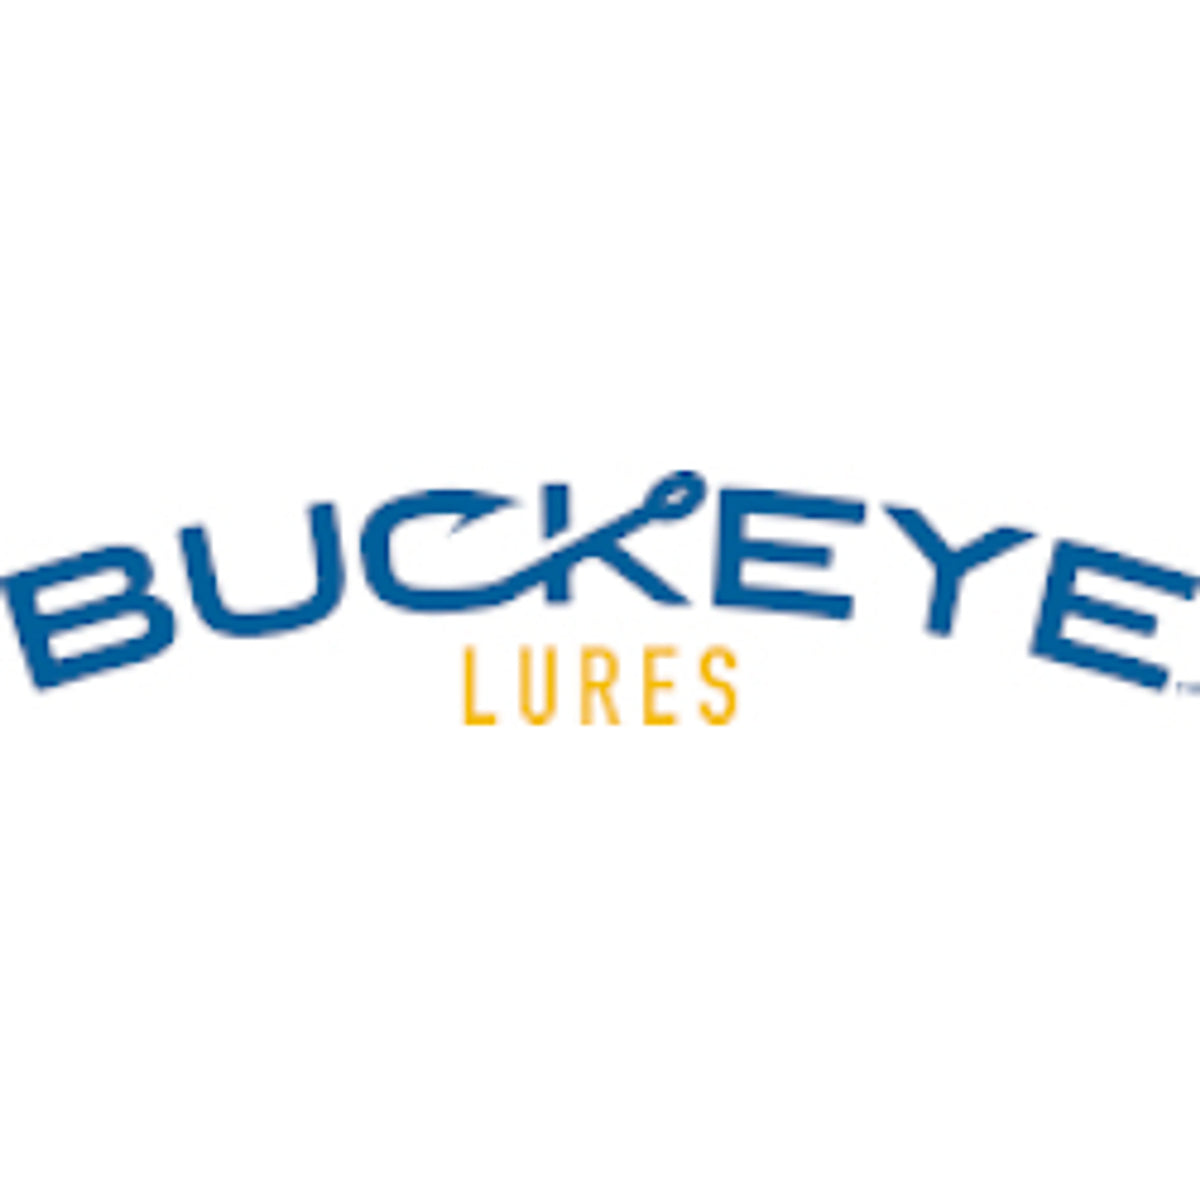 Buckeye Lures — Discount Tackle